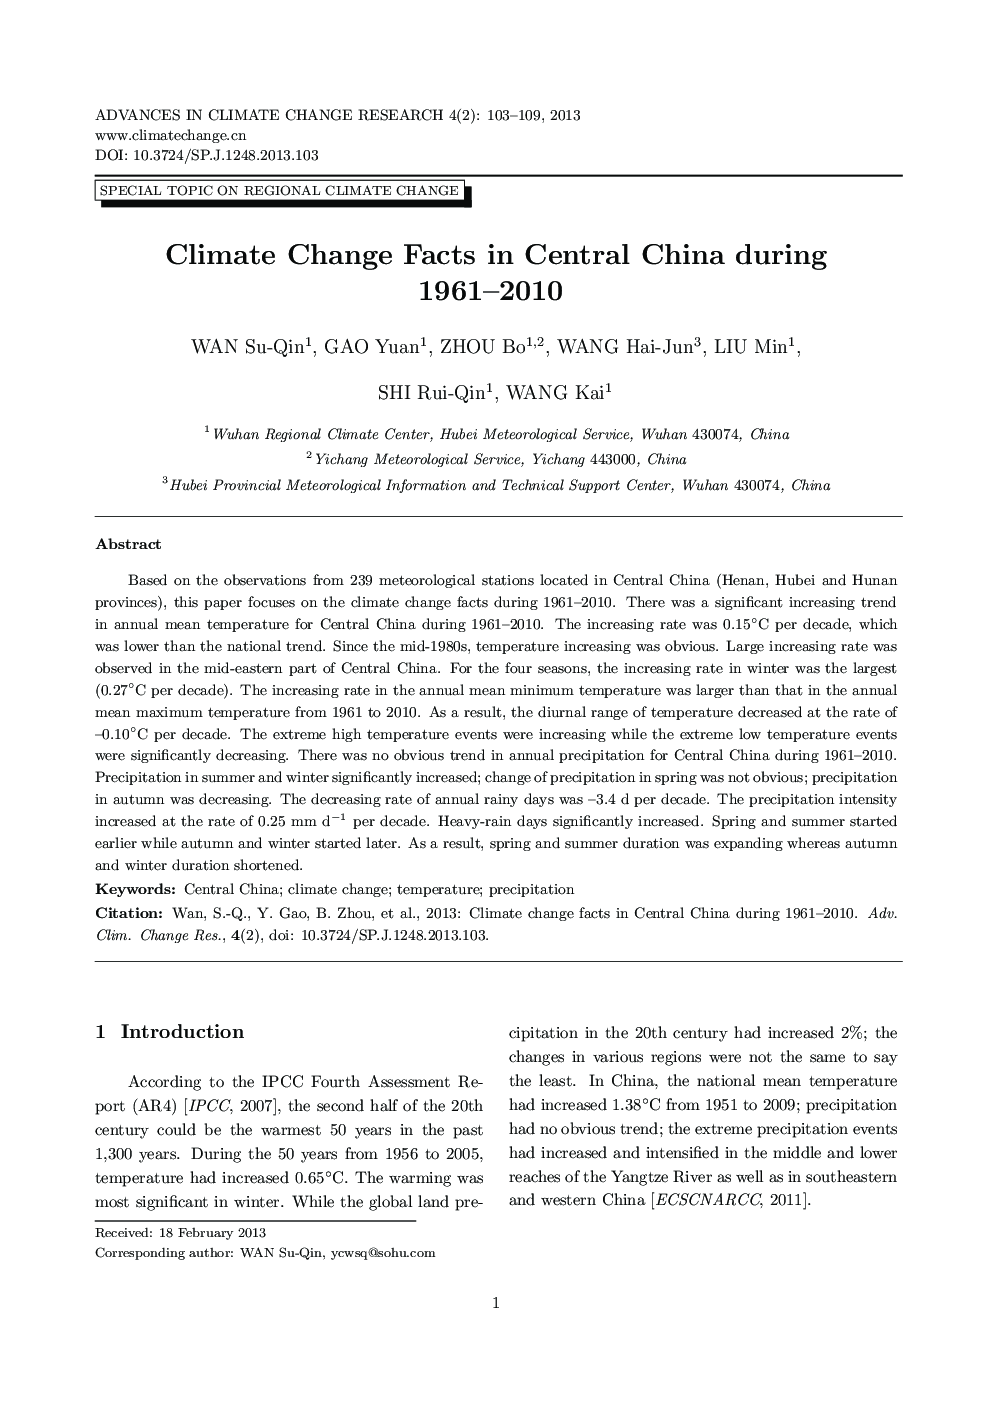 آمار تغییرات اقلیمی در چین در سال های 1961 و 2010 